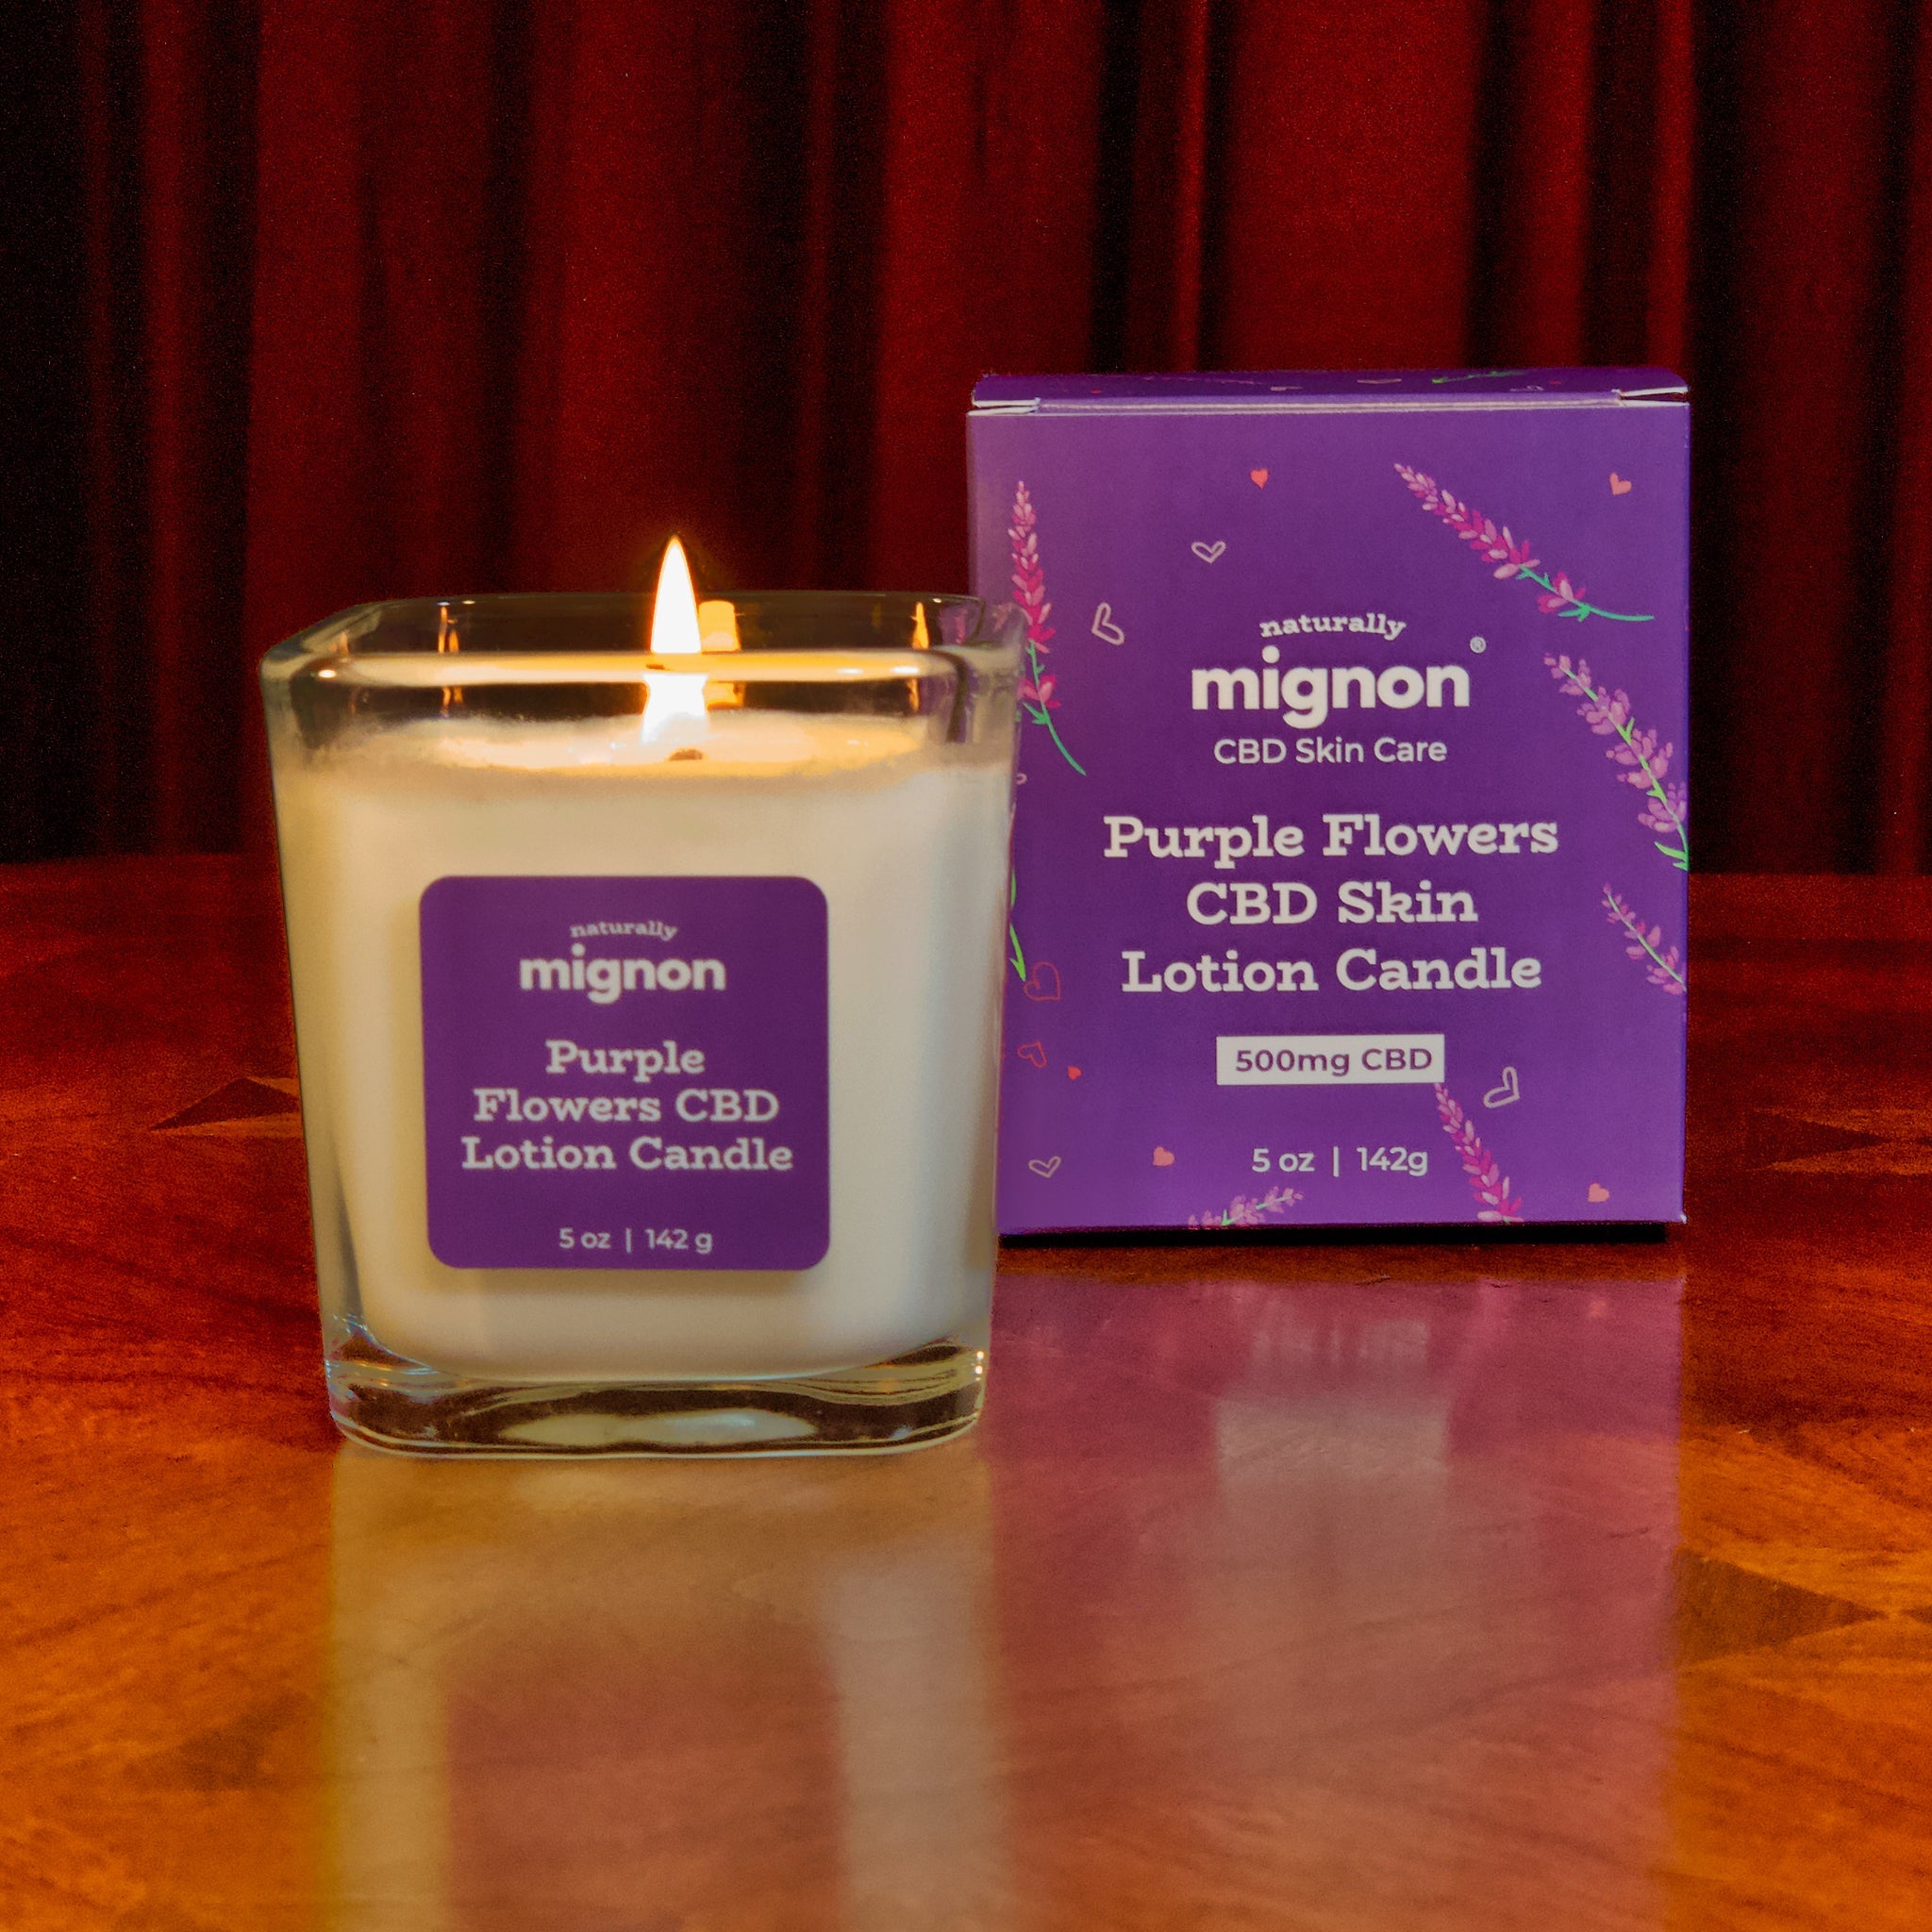 Skin Lotion CBD Candles - Naturally Mignon CBD